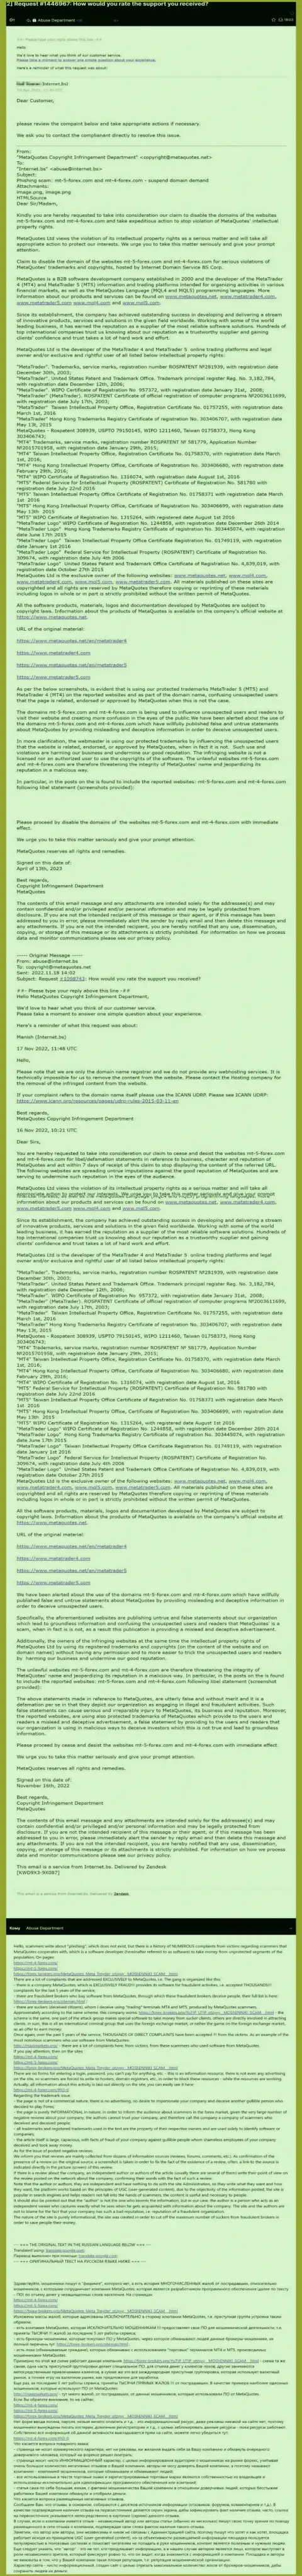 Еще одна петиция с жалобой на обзорную статью о шарашкиной конторе МетаКвотес Нет, создавшей программы Meta Trader 4 и MetaTrader 5